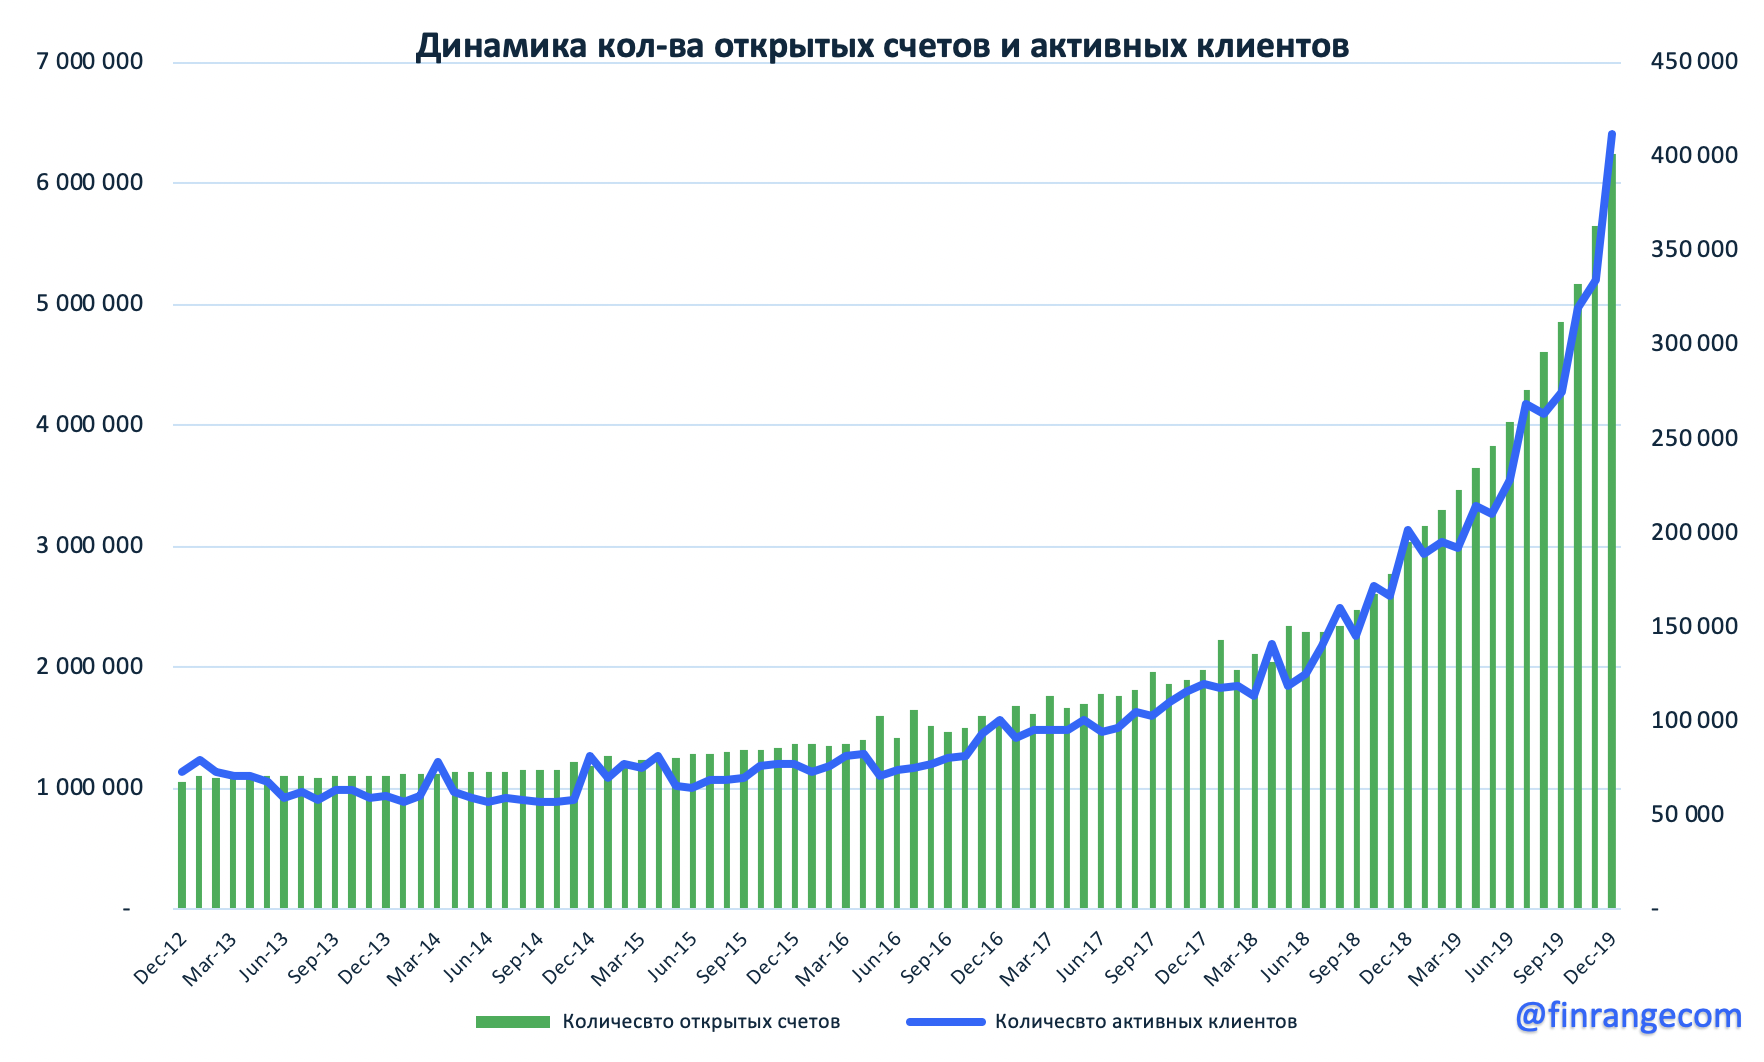 Московская биржа - число частных инвесторов бьет рекорды, но объёмы торгов падают